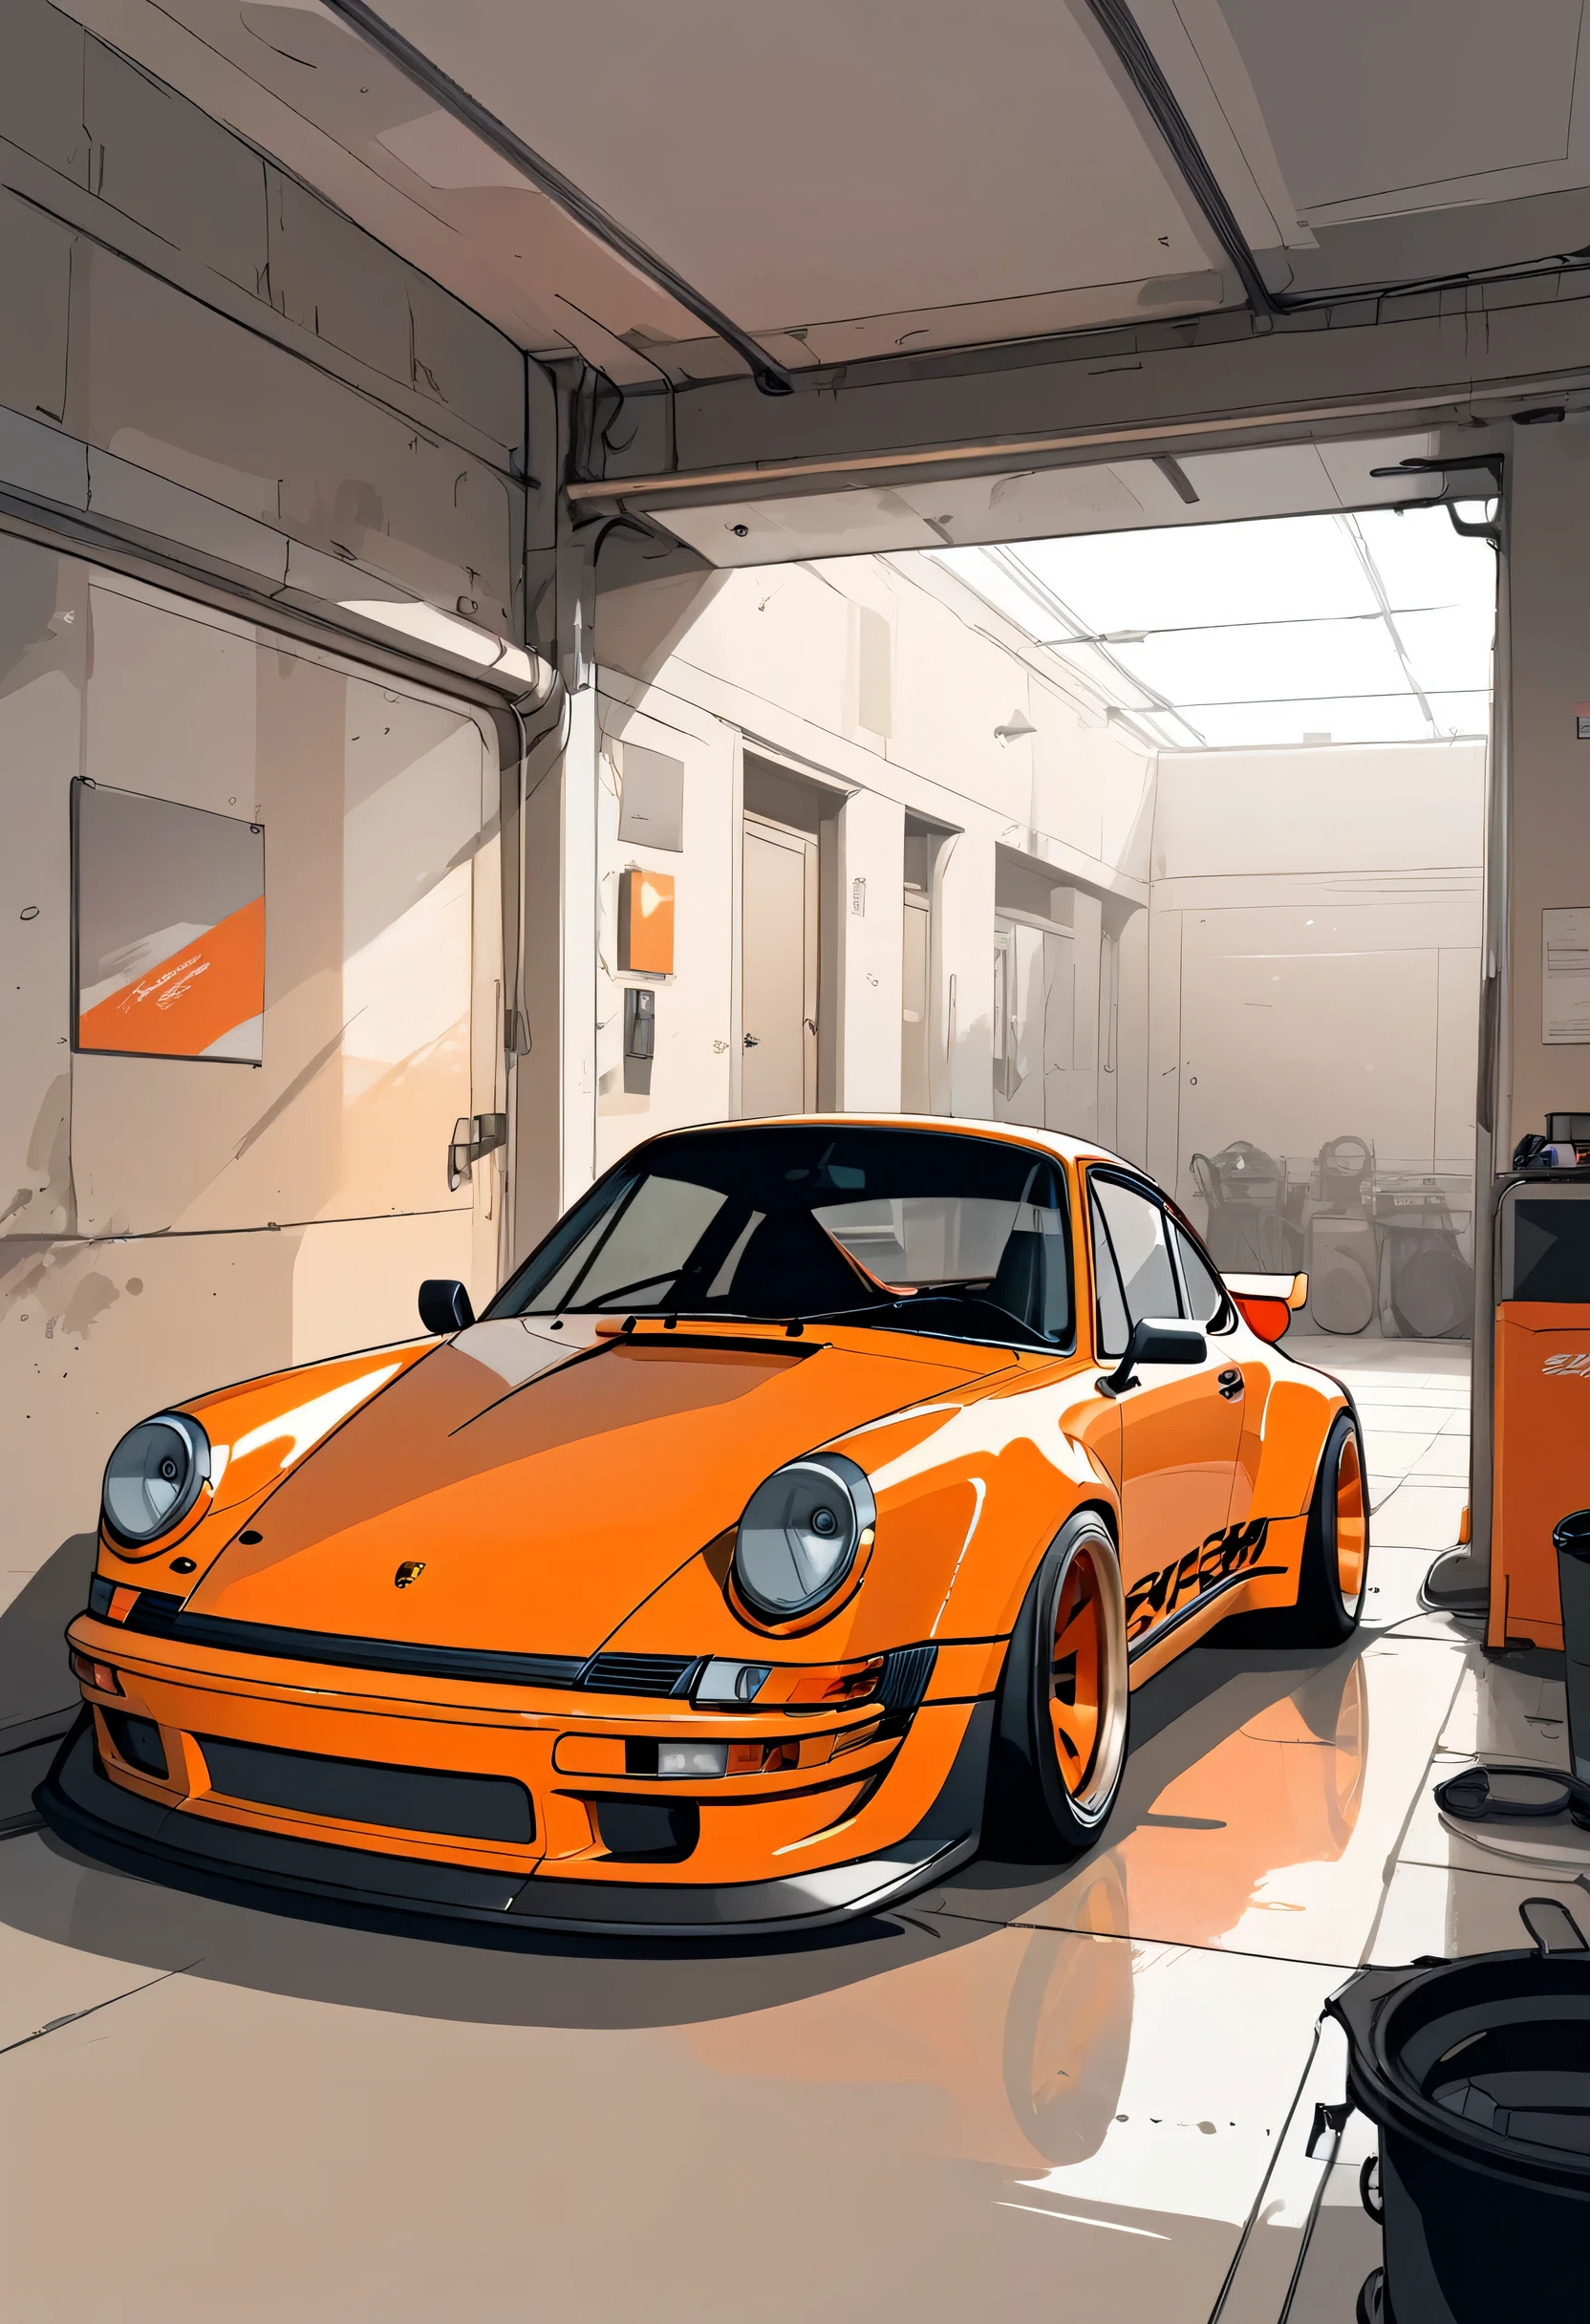 A Porsche 911 rwb， Minimalist, Disjointed,Editor， illustration ，Dark beige and orange 